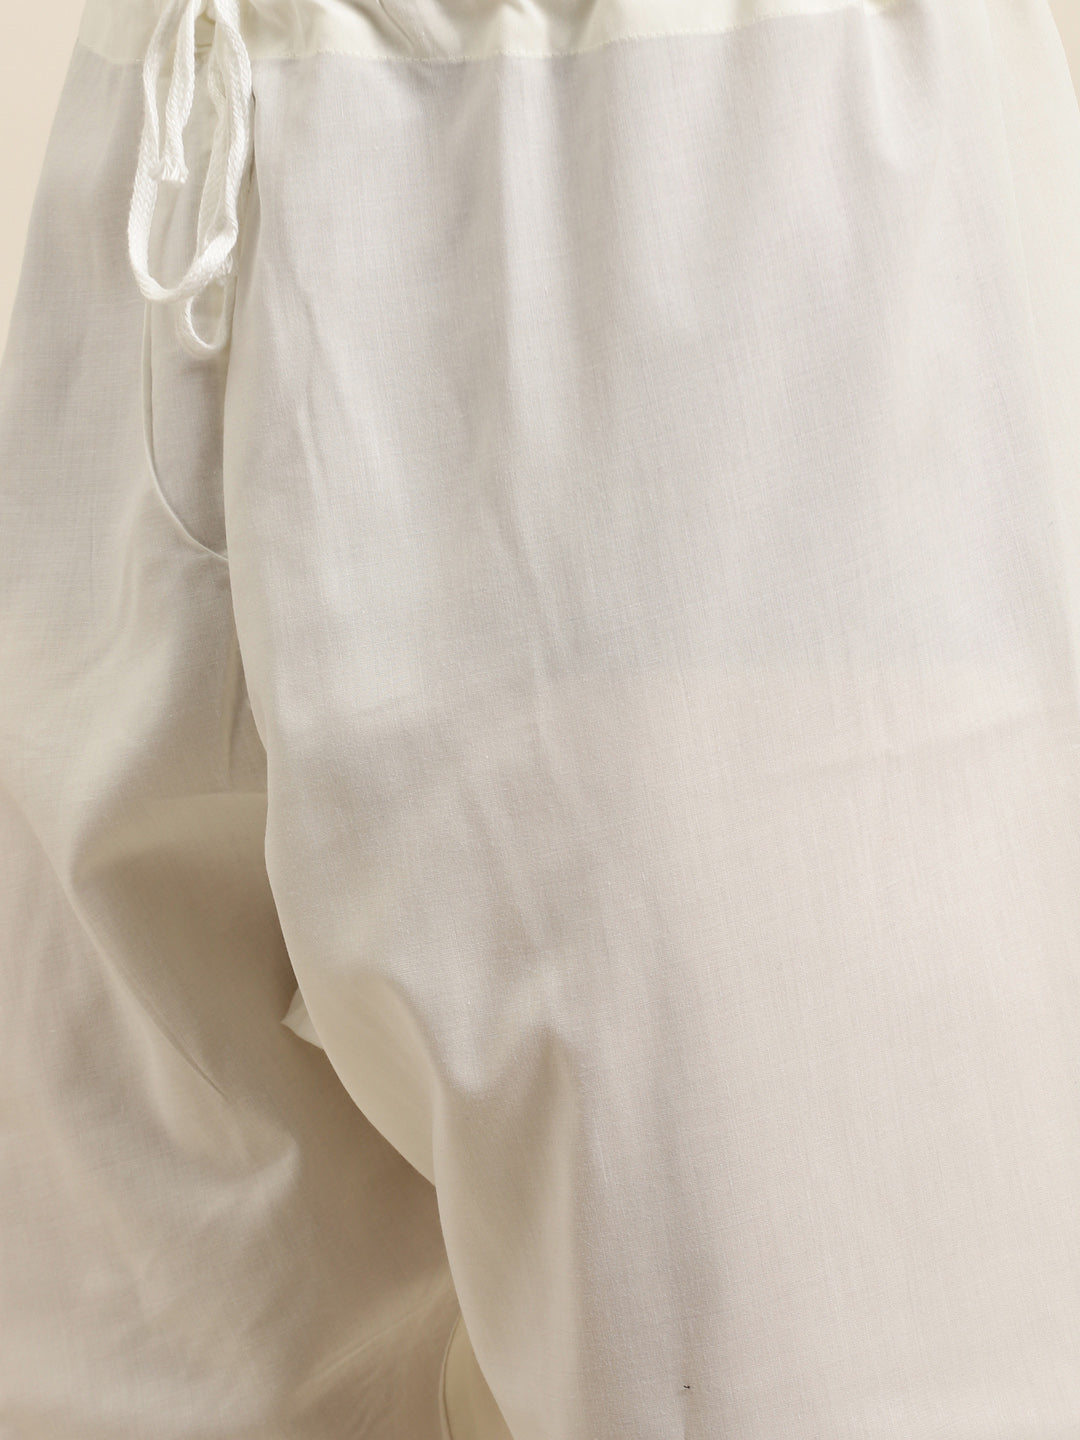 Men's Jacquard Silk Mustard & Gold Kurta & Off-White Churidar Pyjama Set - Sojanya